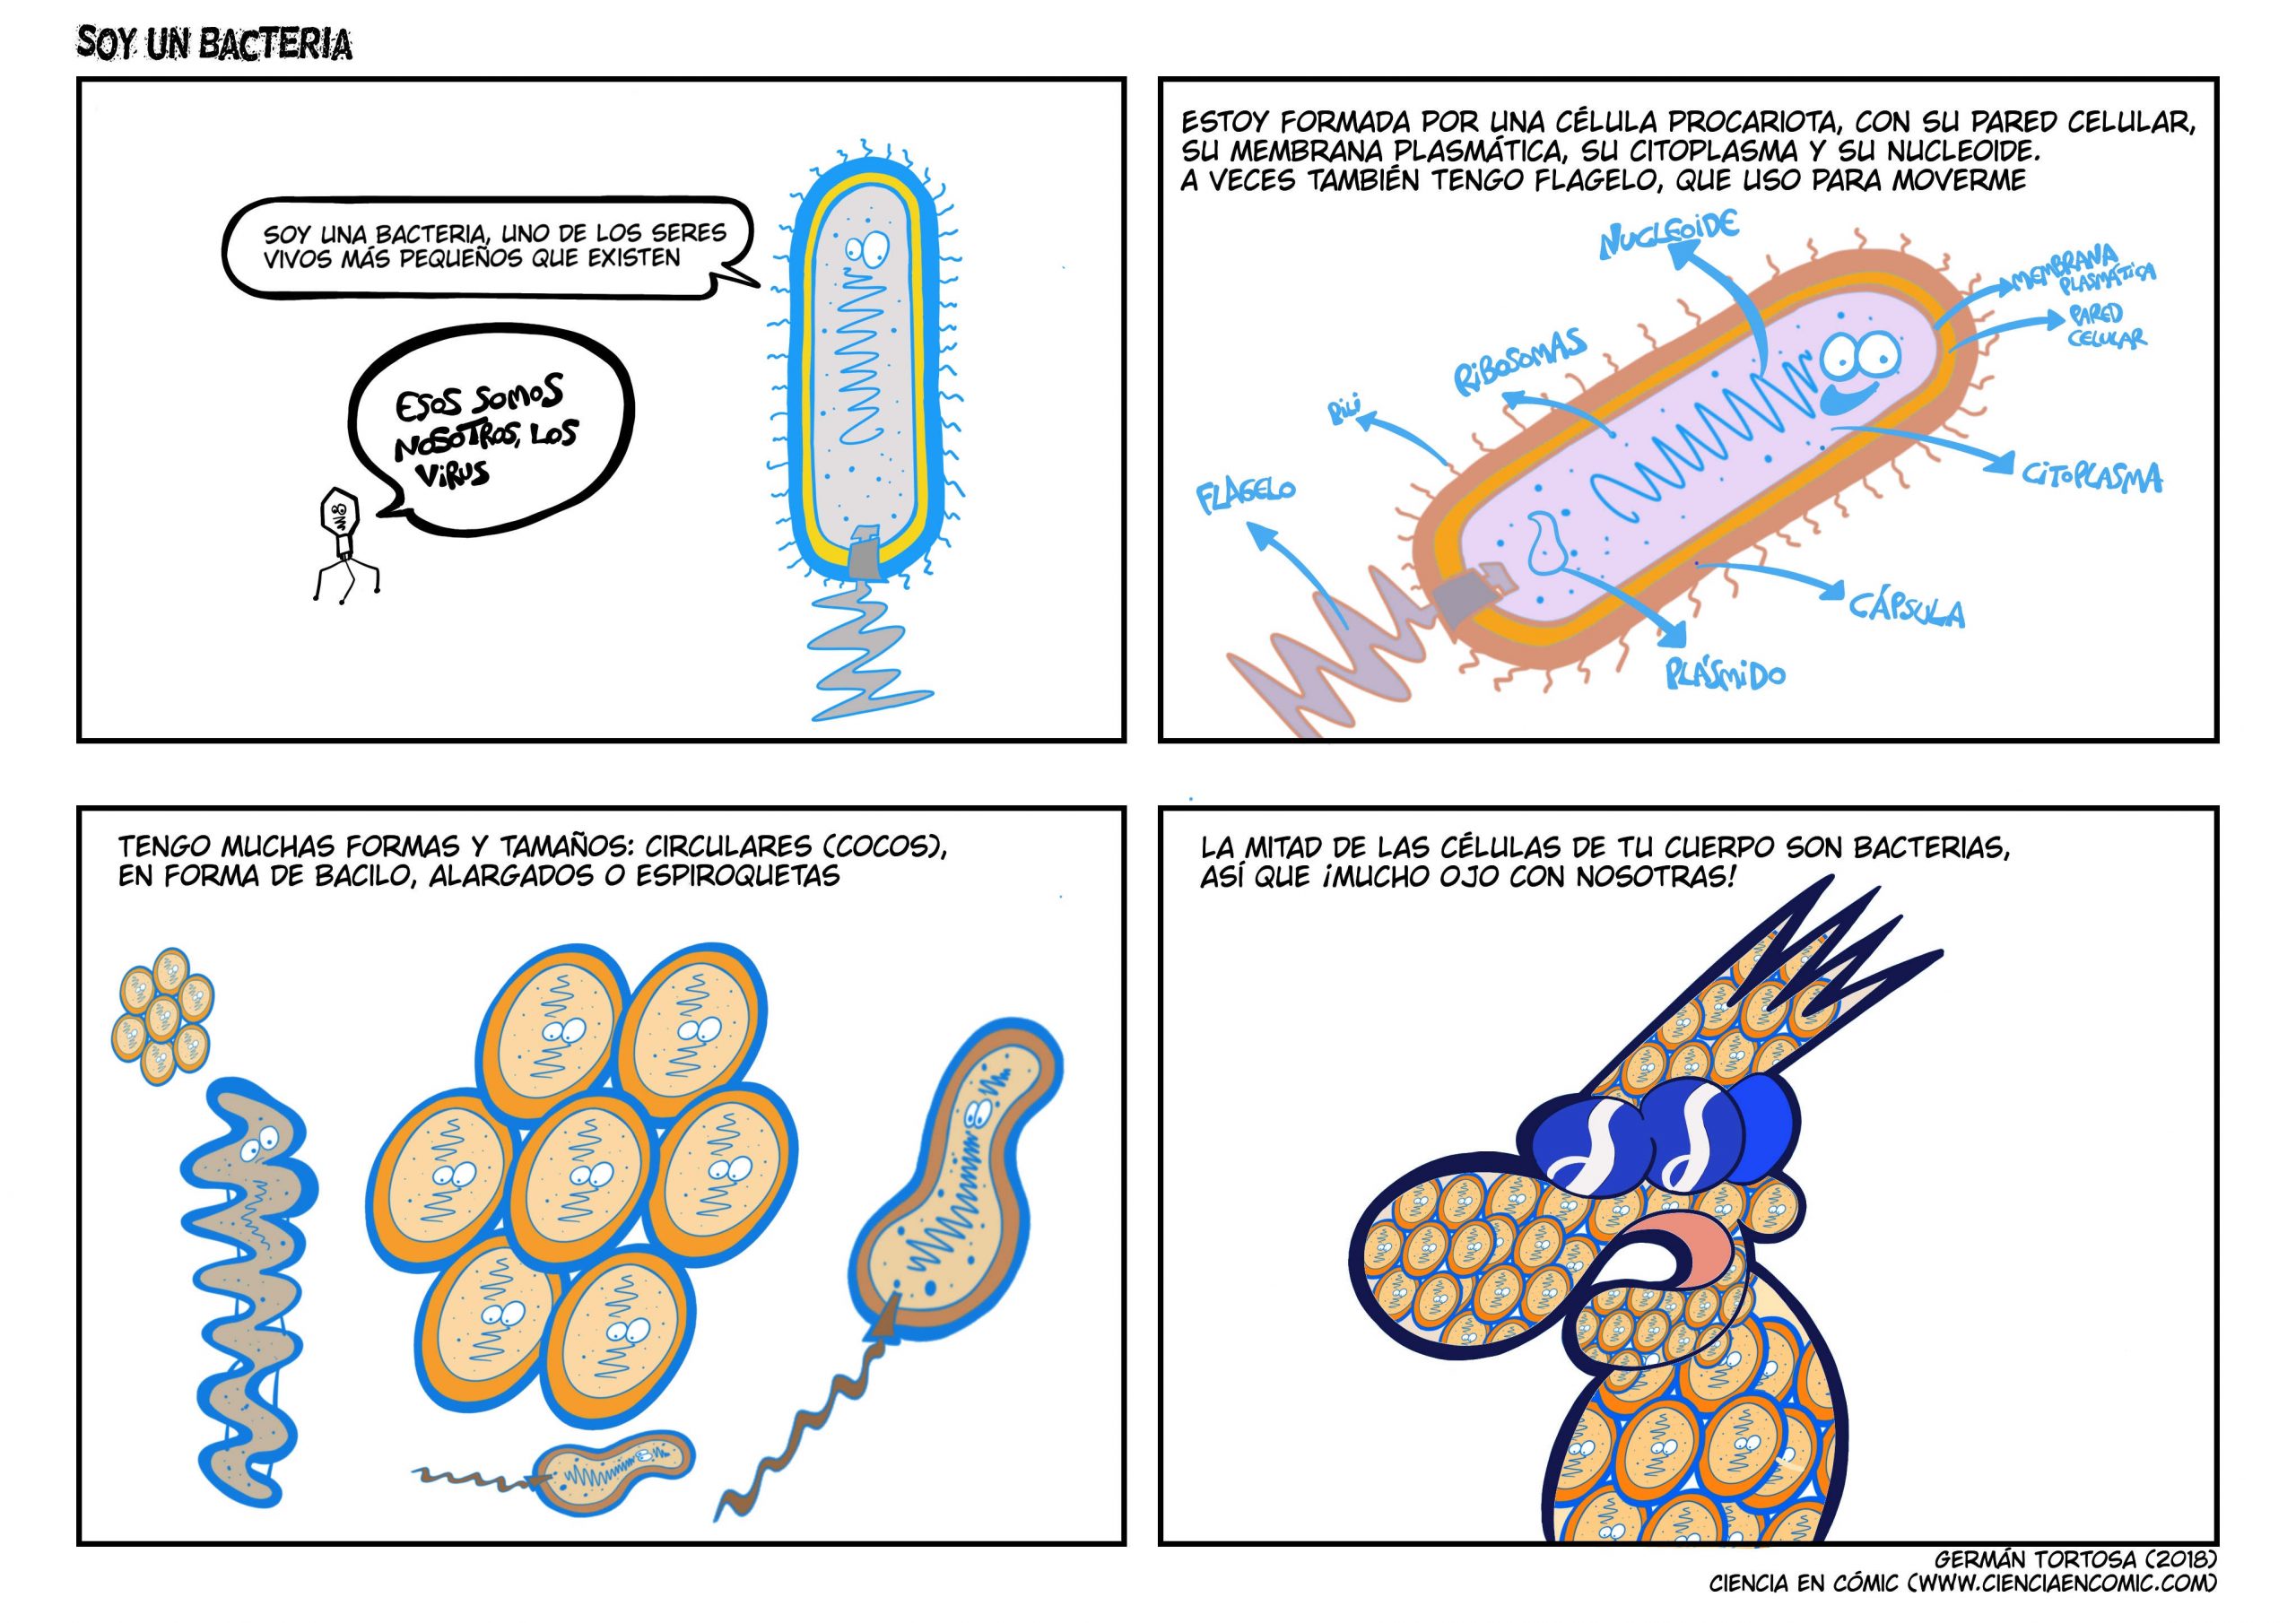 Célula procariota, ¡soy una bacteria!